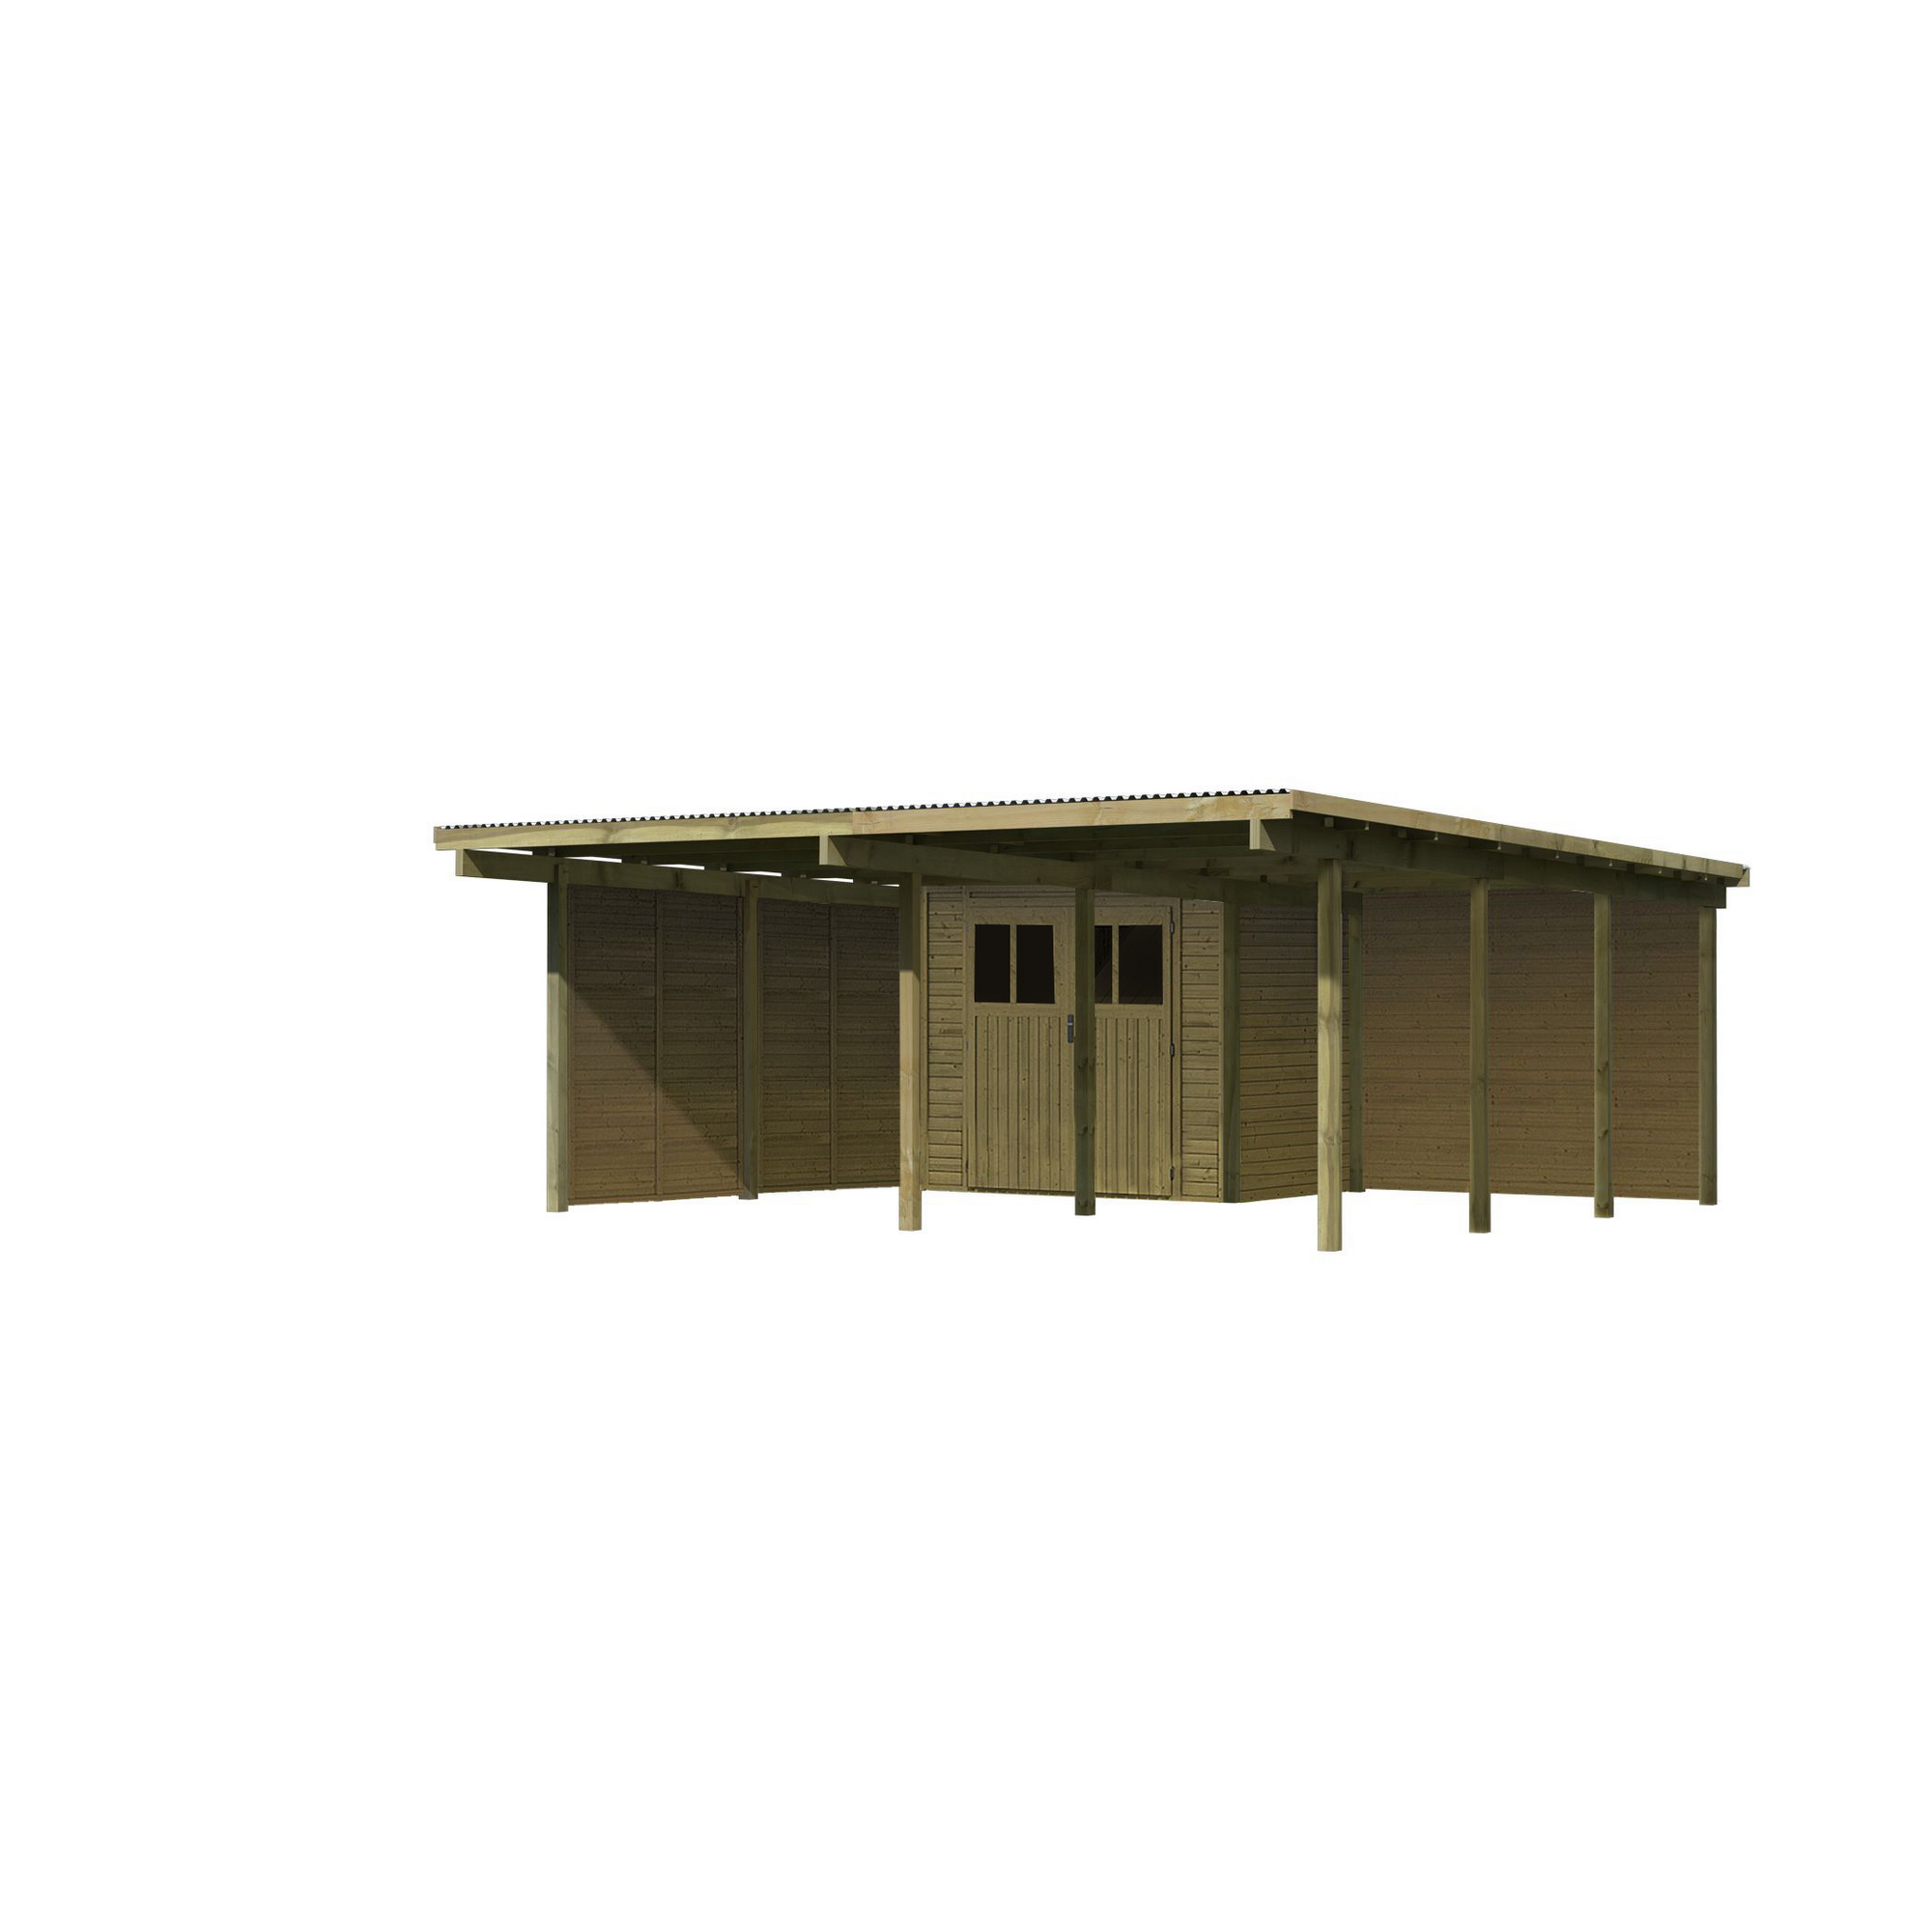 Doppelcarport 'Eco 2' 563 x 676 cm Kiefer KDI PVC-Dach, Abstellraum klein, 2 Seitenwänden, 1 Rückwand + product picture